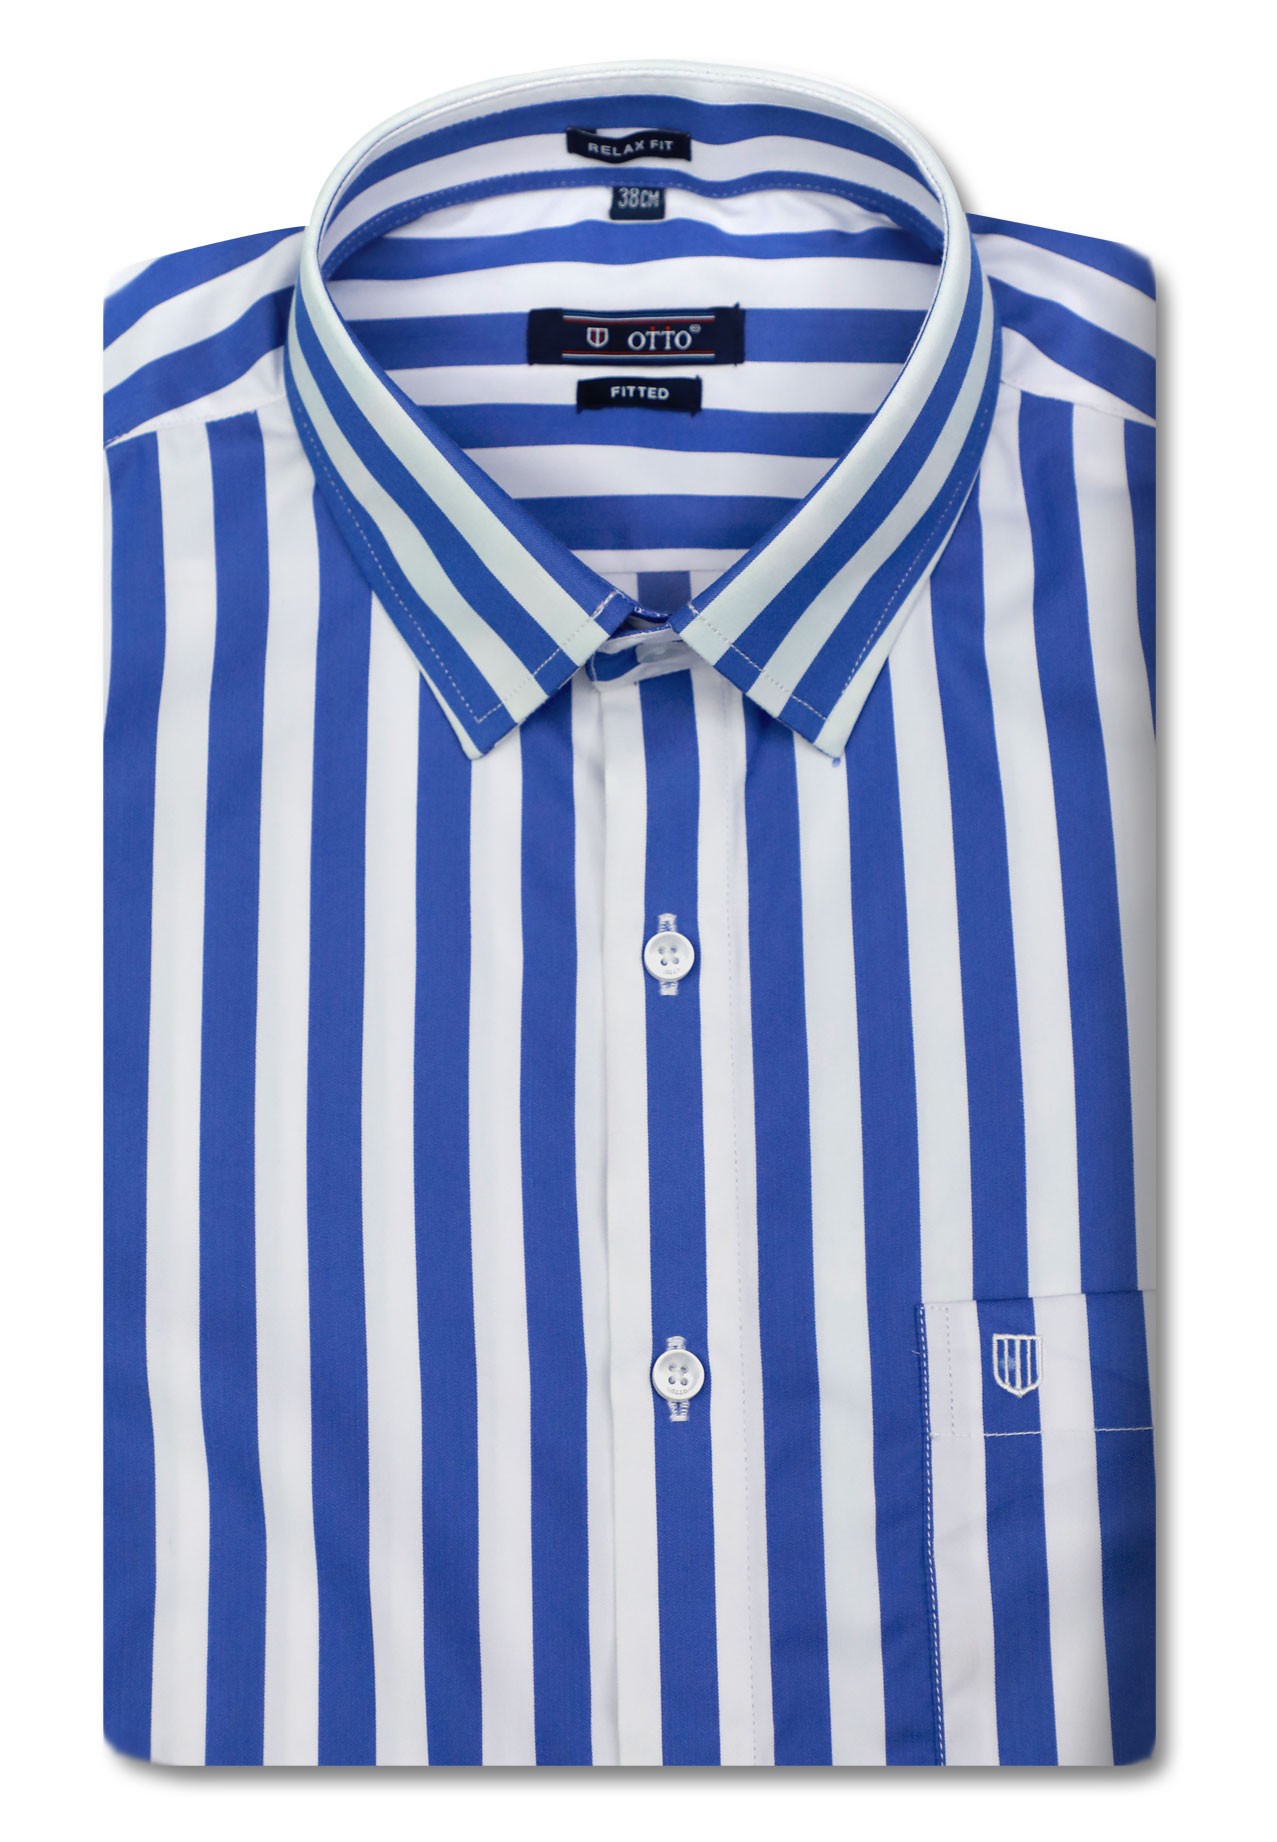 Buy Otto LS CS80220 Mens Formal Shirt Blue Online Dubai, UAE ...